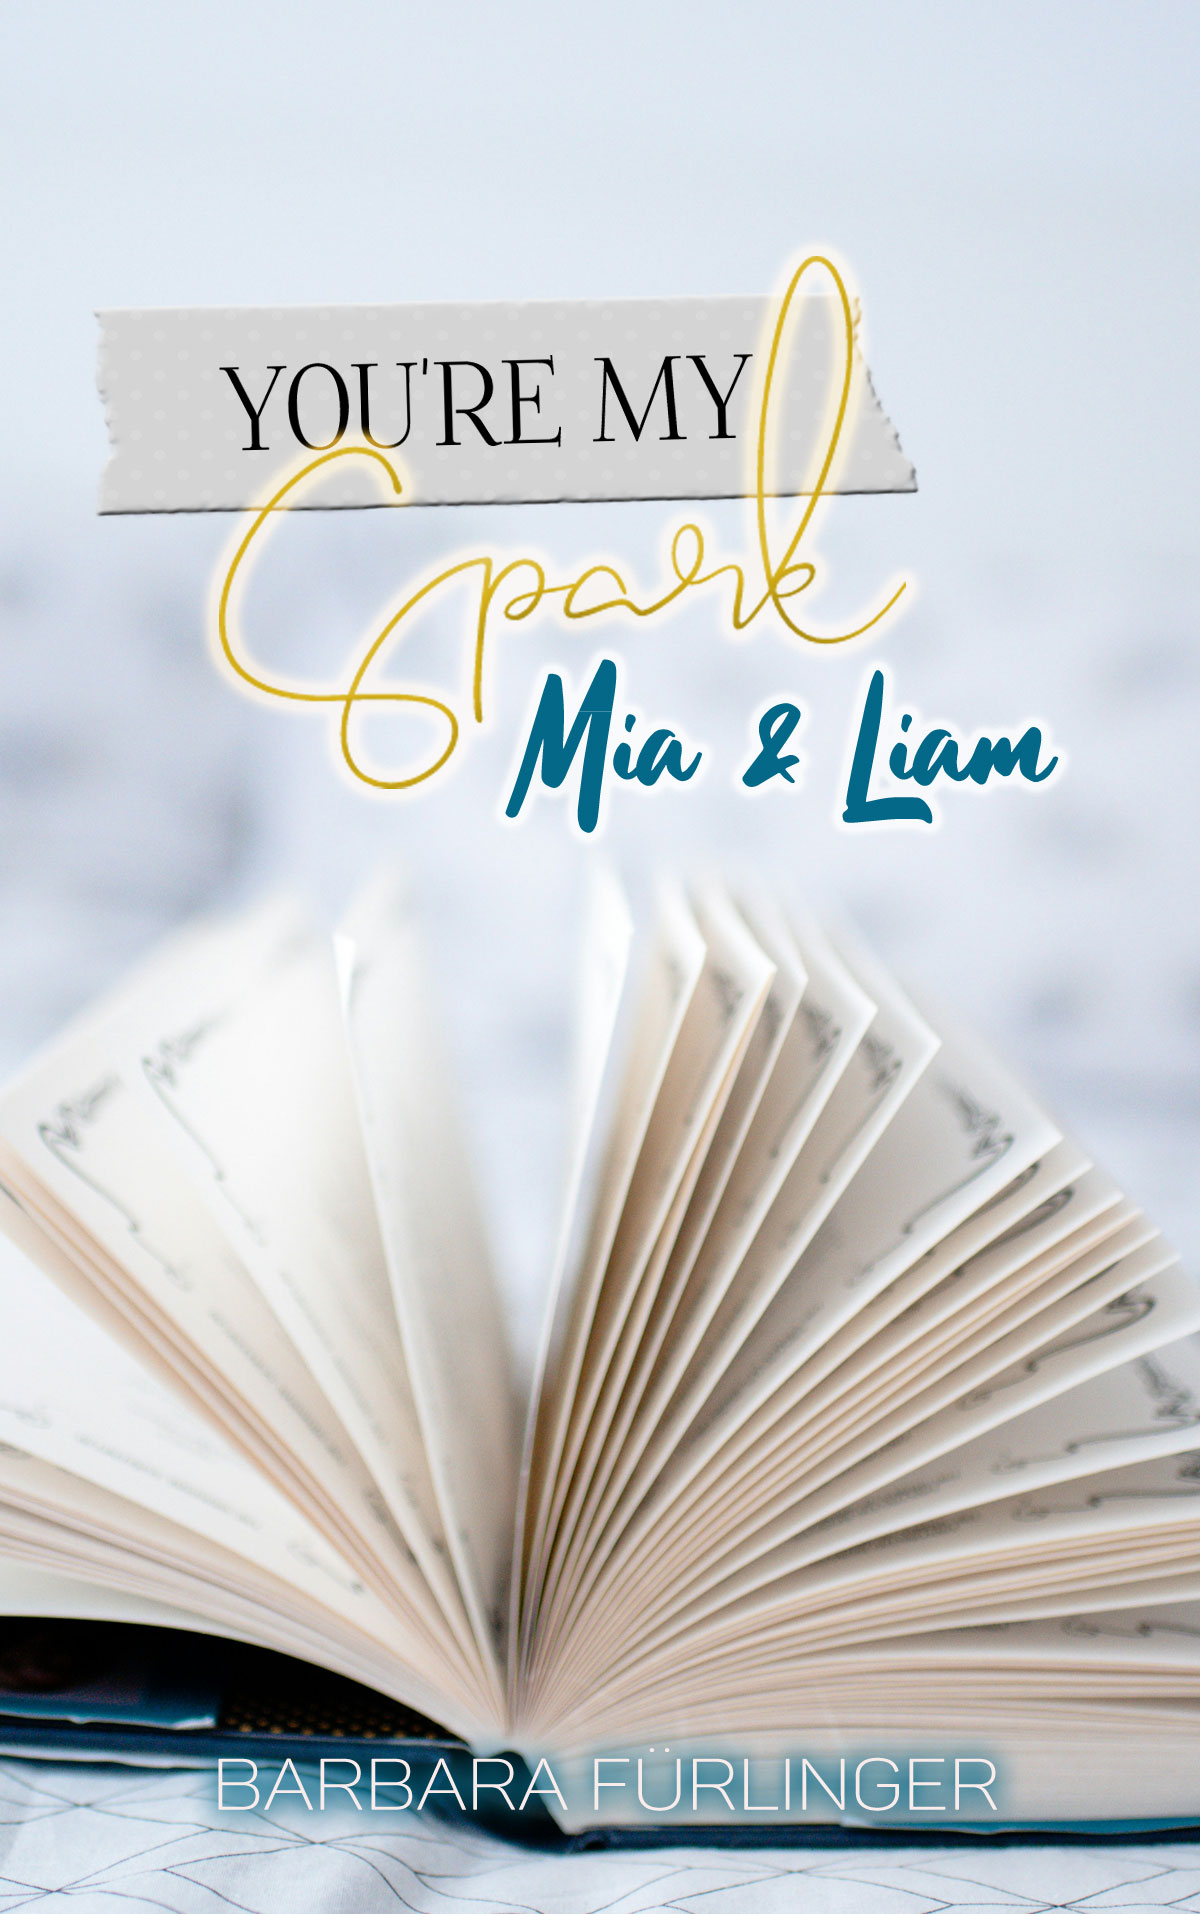 My Spark: Mia & Liam